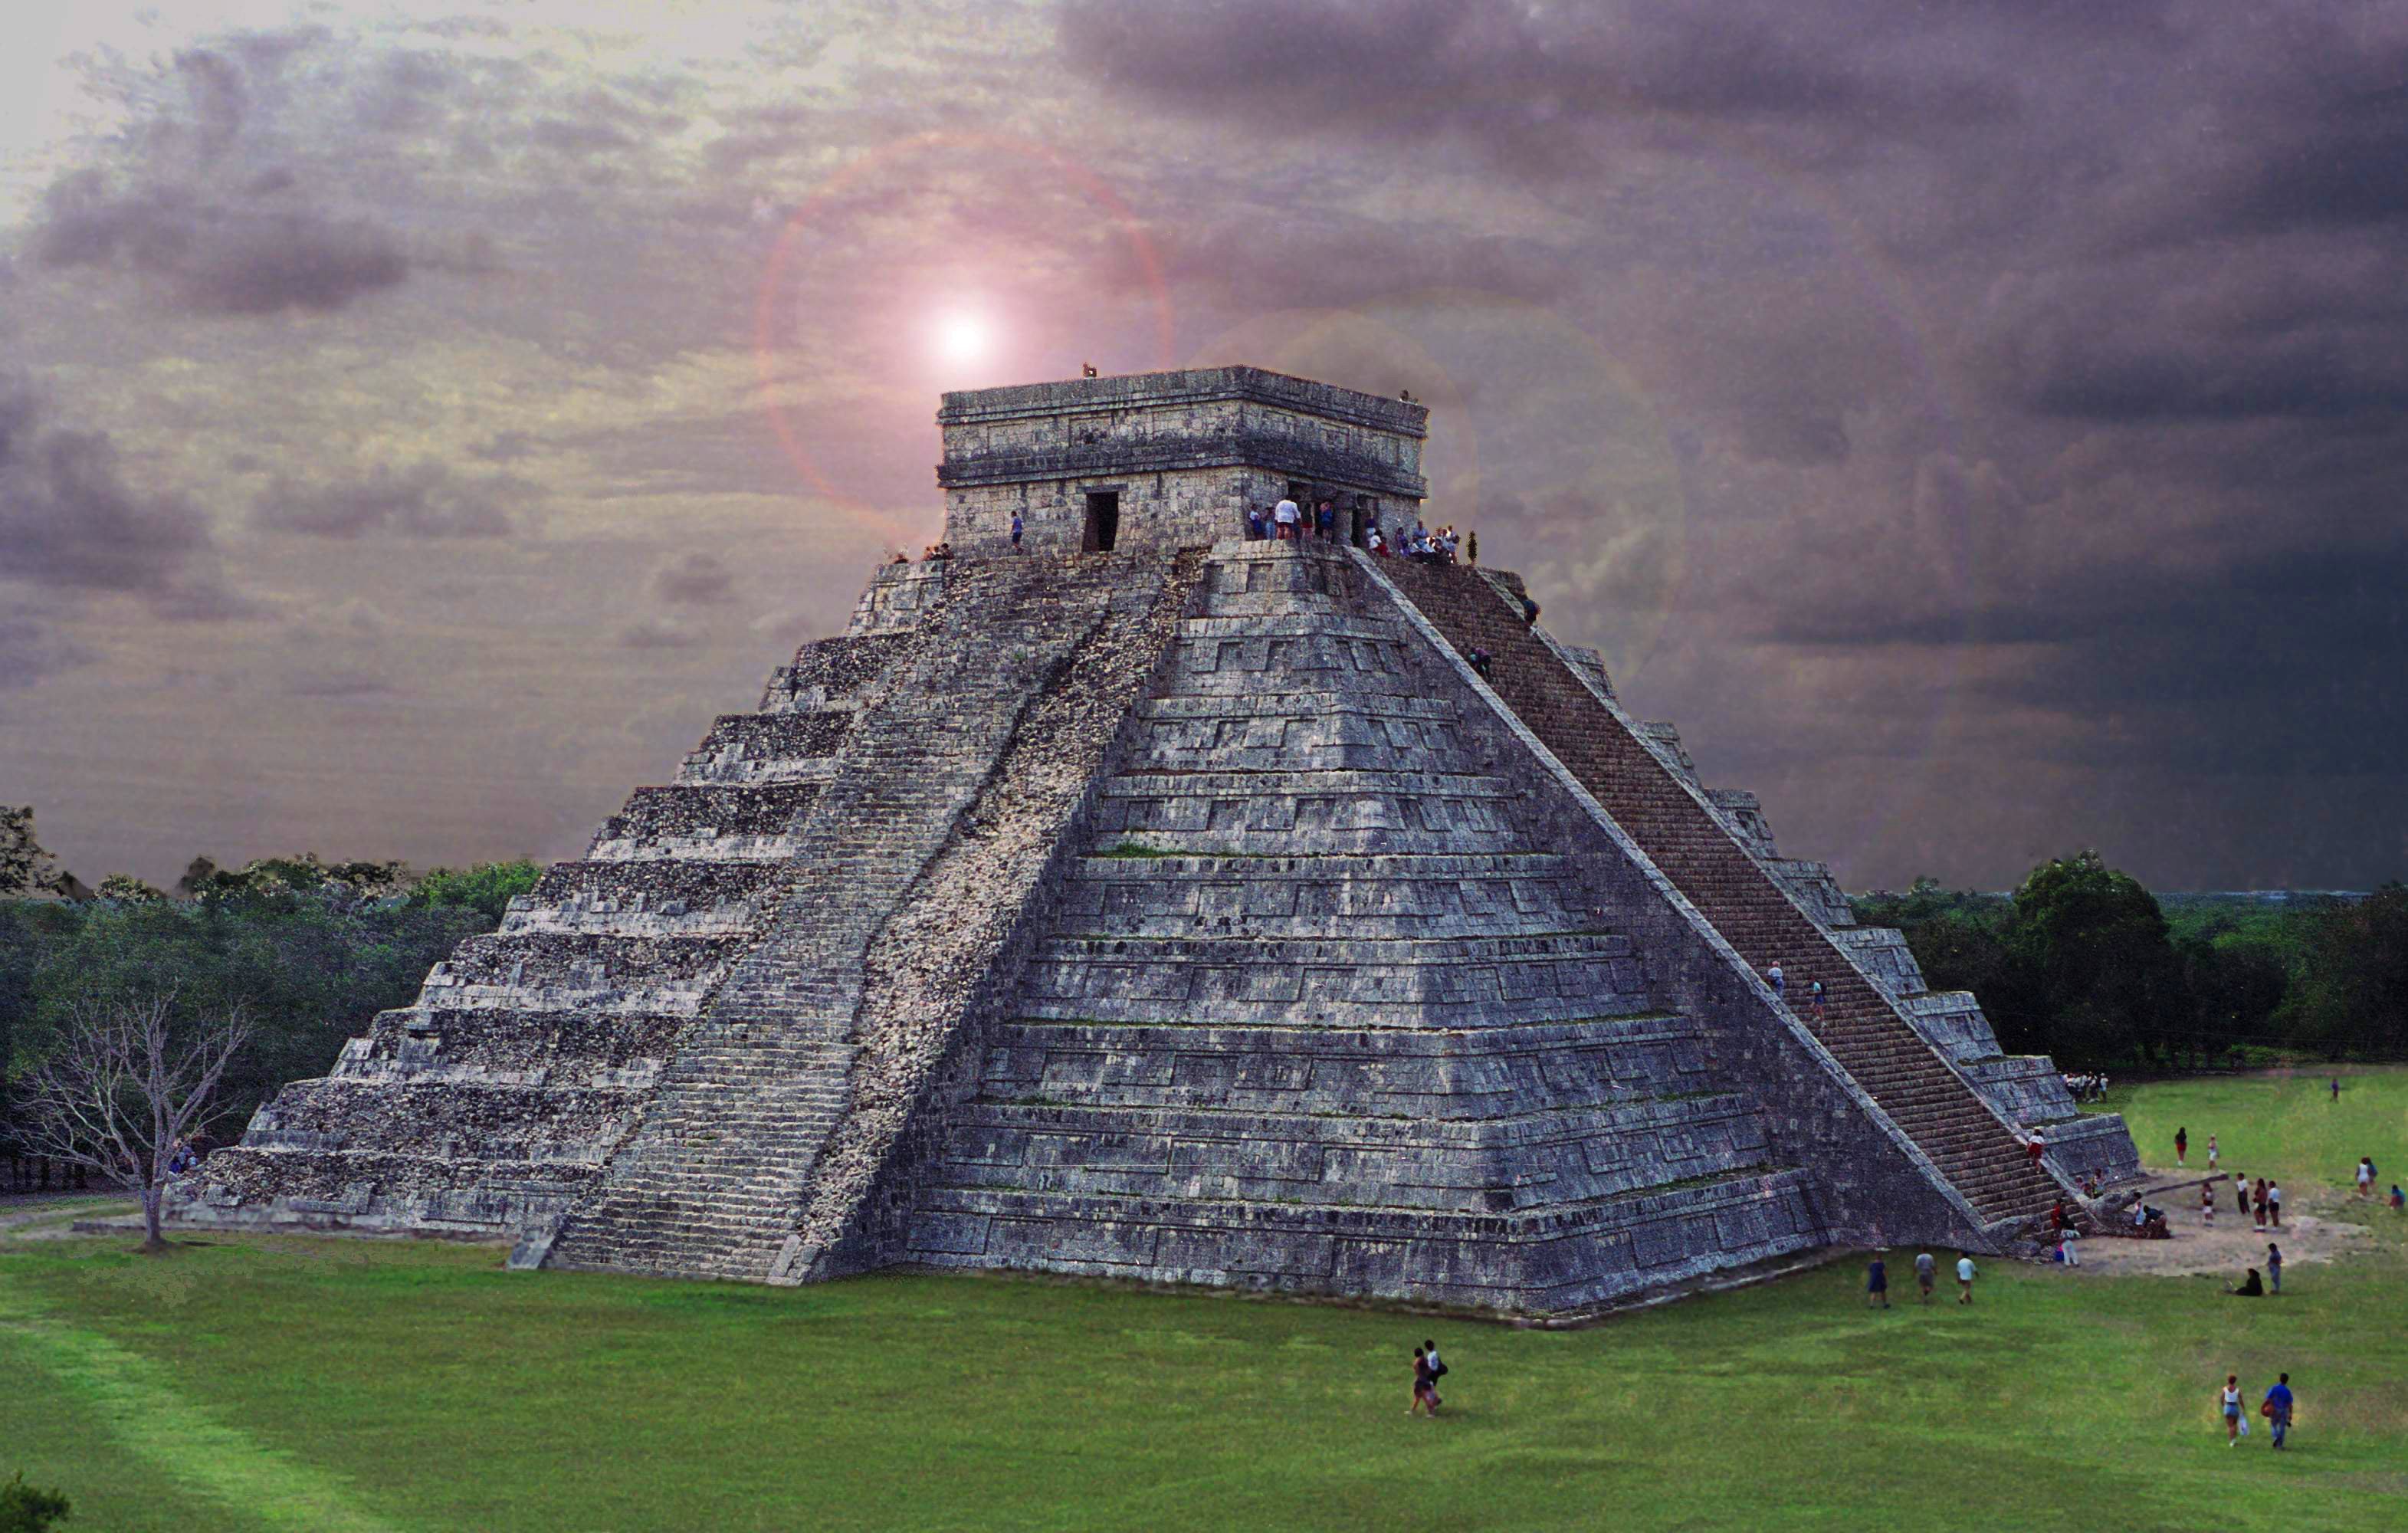 Мексика Чичен ица пирамида Кукулькана